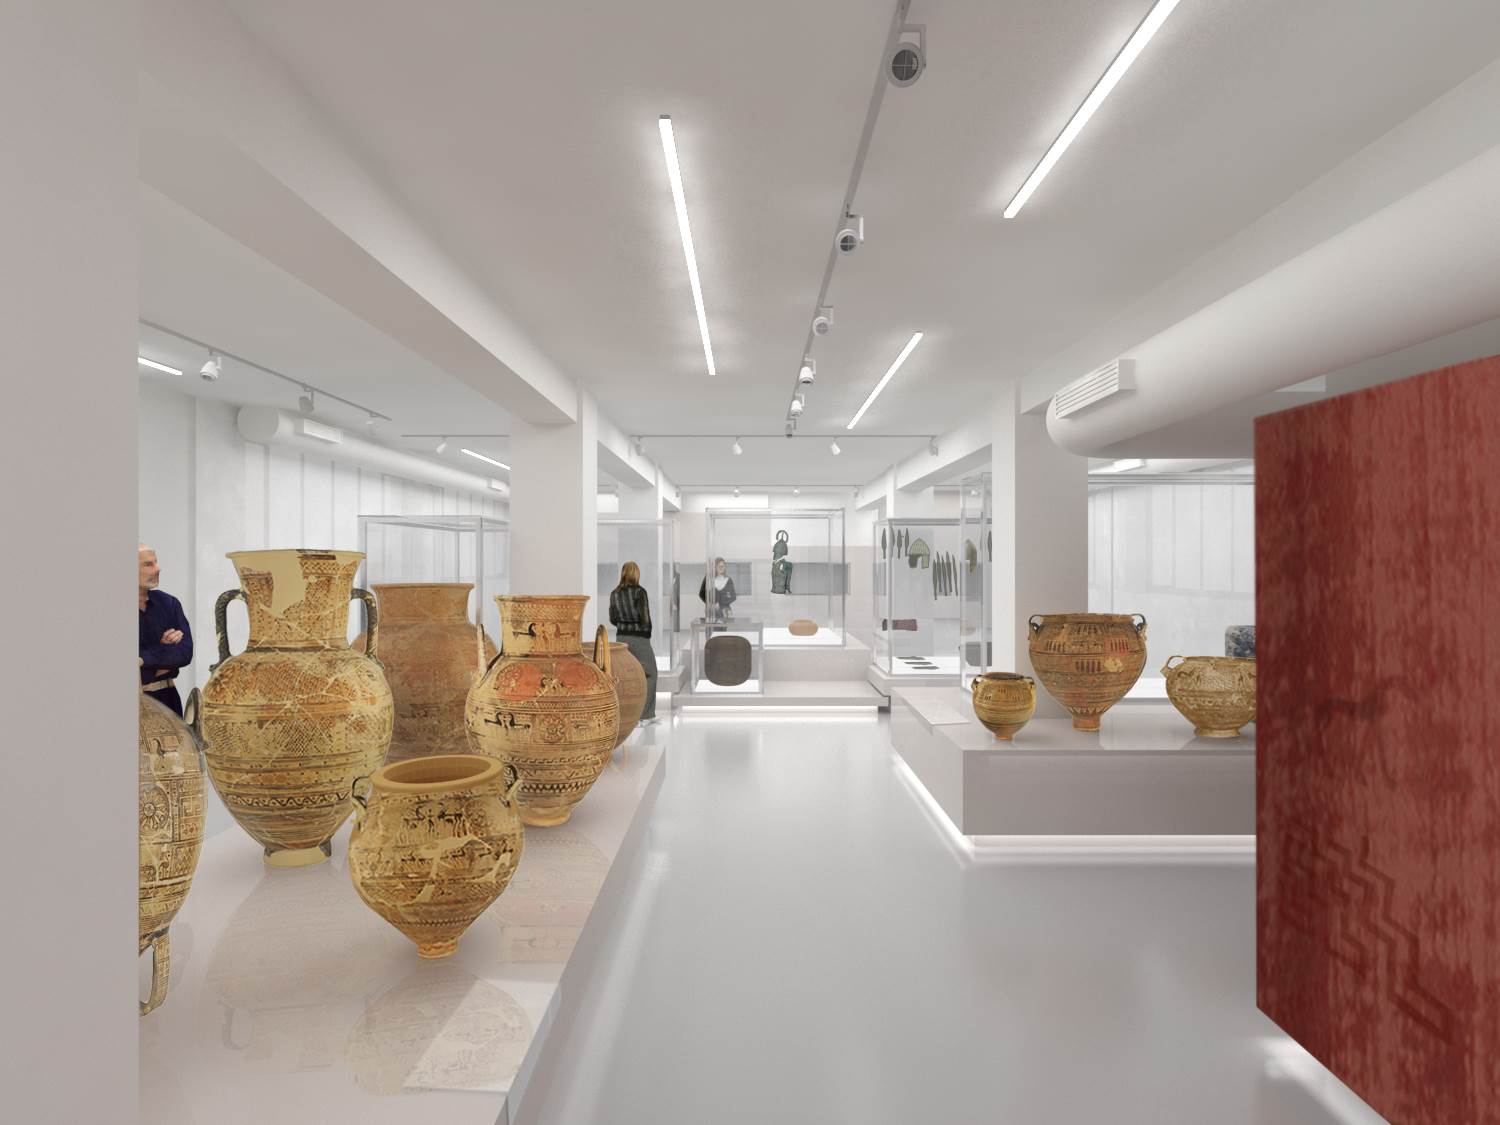 Αργος: Η πόλη αποκτά ένα σύγχρονων προδιαγραφών Μουσείο